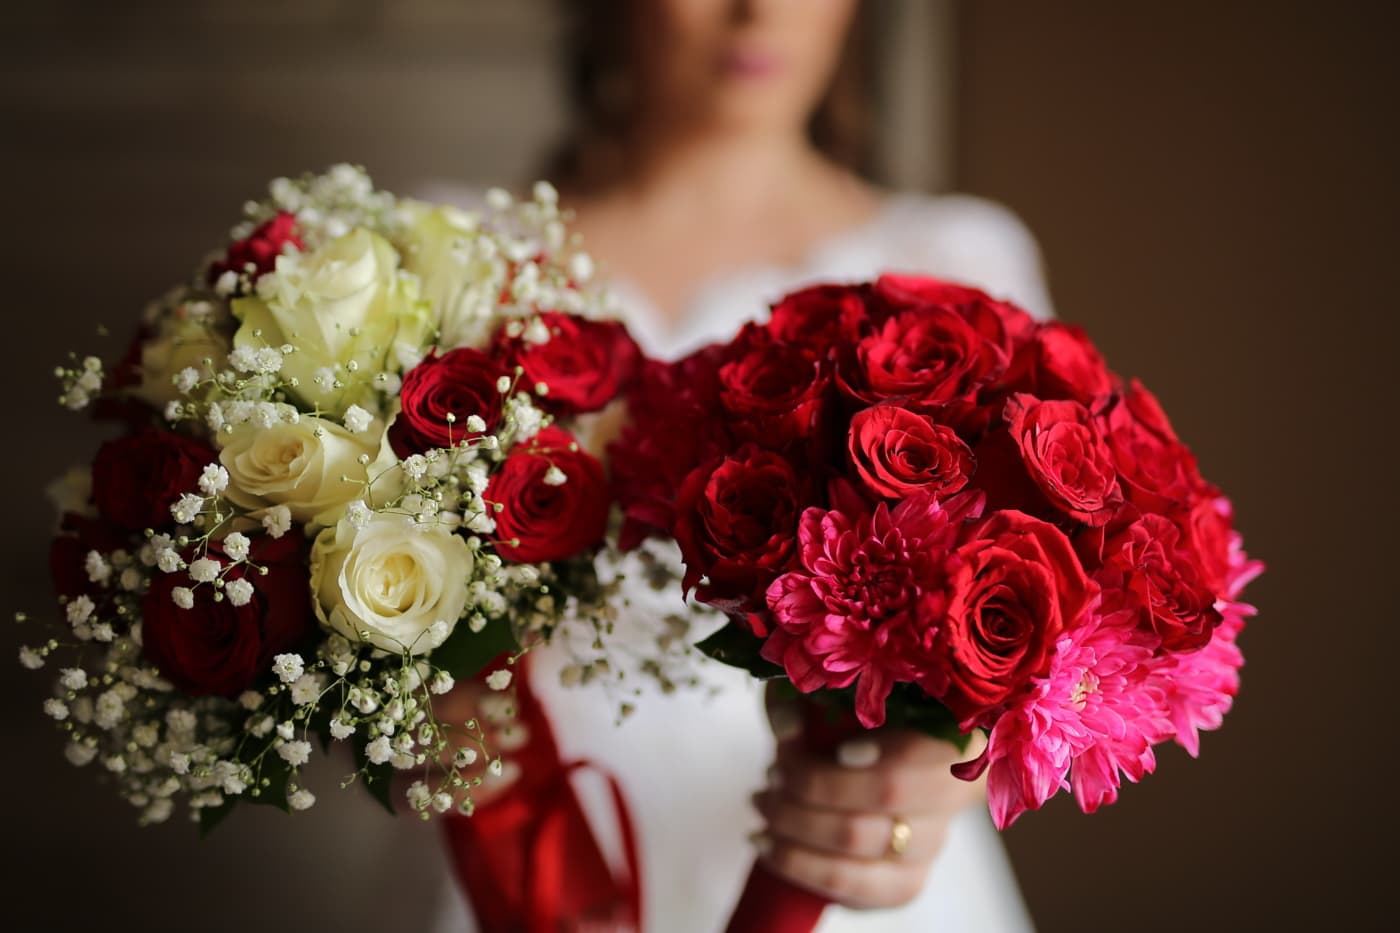 đám cưới, bó hoa cưới, Hoa hồng, màu đỏ, bó hoa, cô dâu, lãng mạn, Yêu, Hoa, Hoa hồng